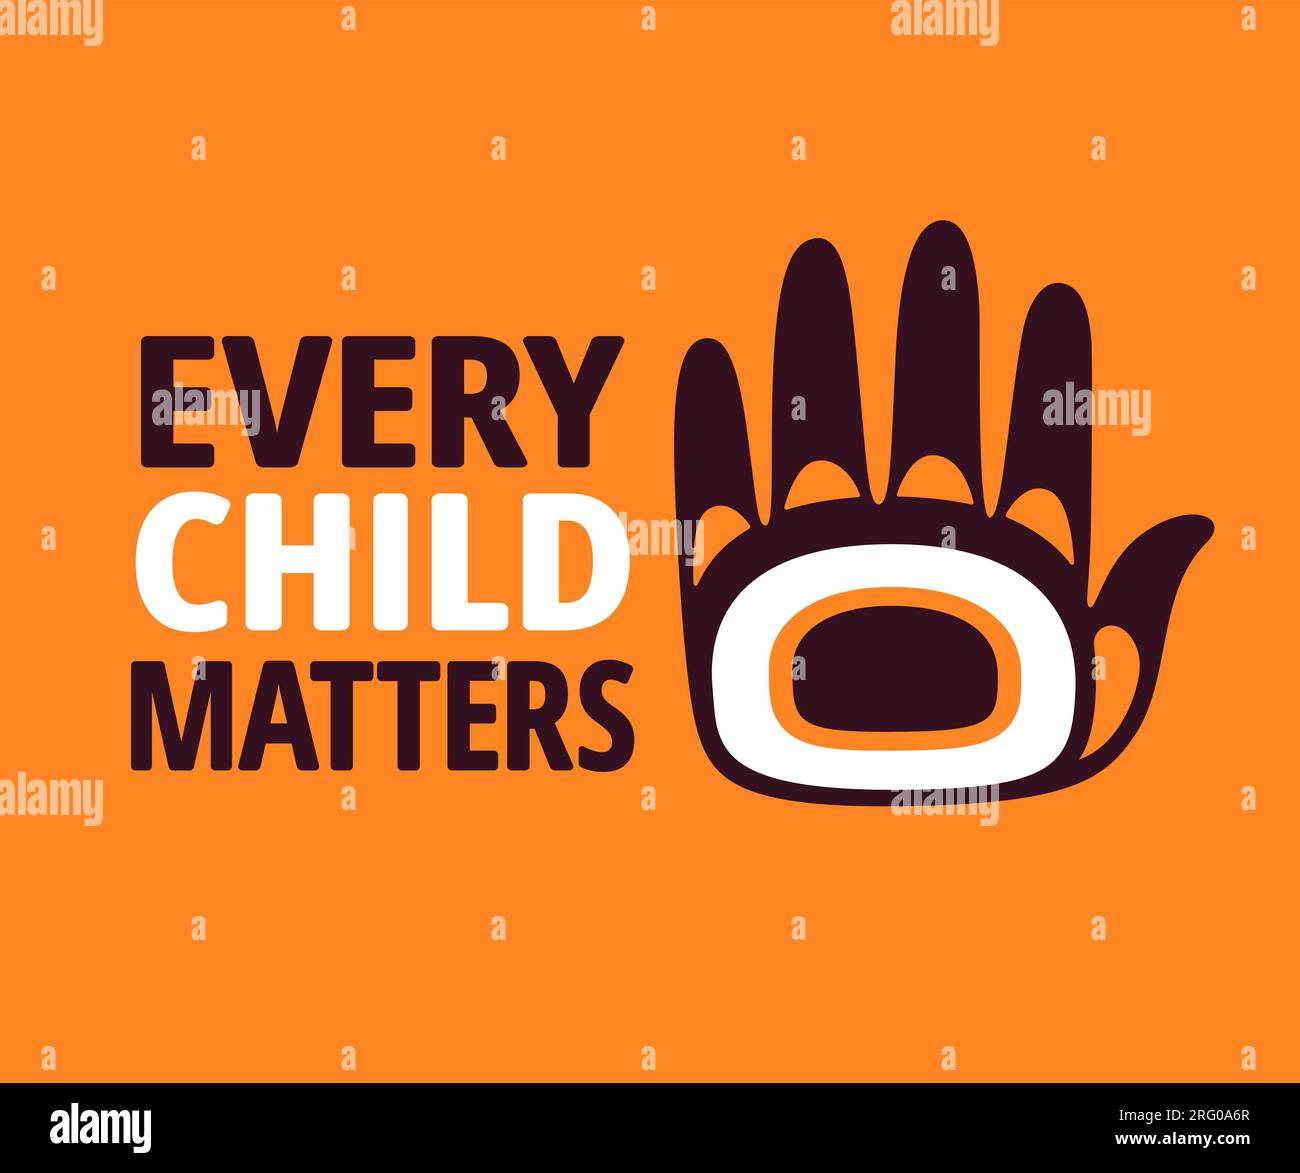 Every Child Matters, giornata nazionale per la verità e la riconciliazione (Orange Shirt Day) in Canada. Testo con disegno stampato a mano. Illustrazione banner vettoriale. Illustrazione Vettoriale